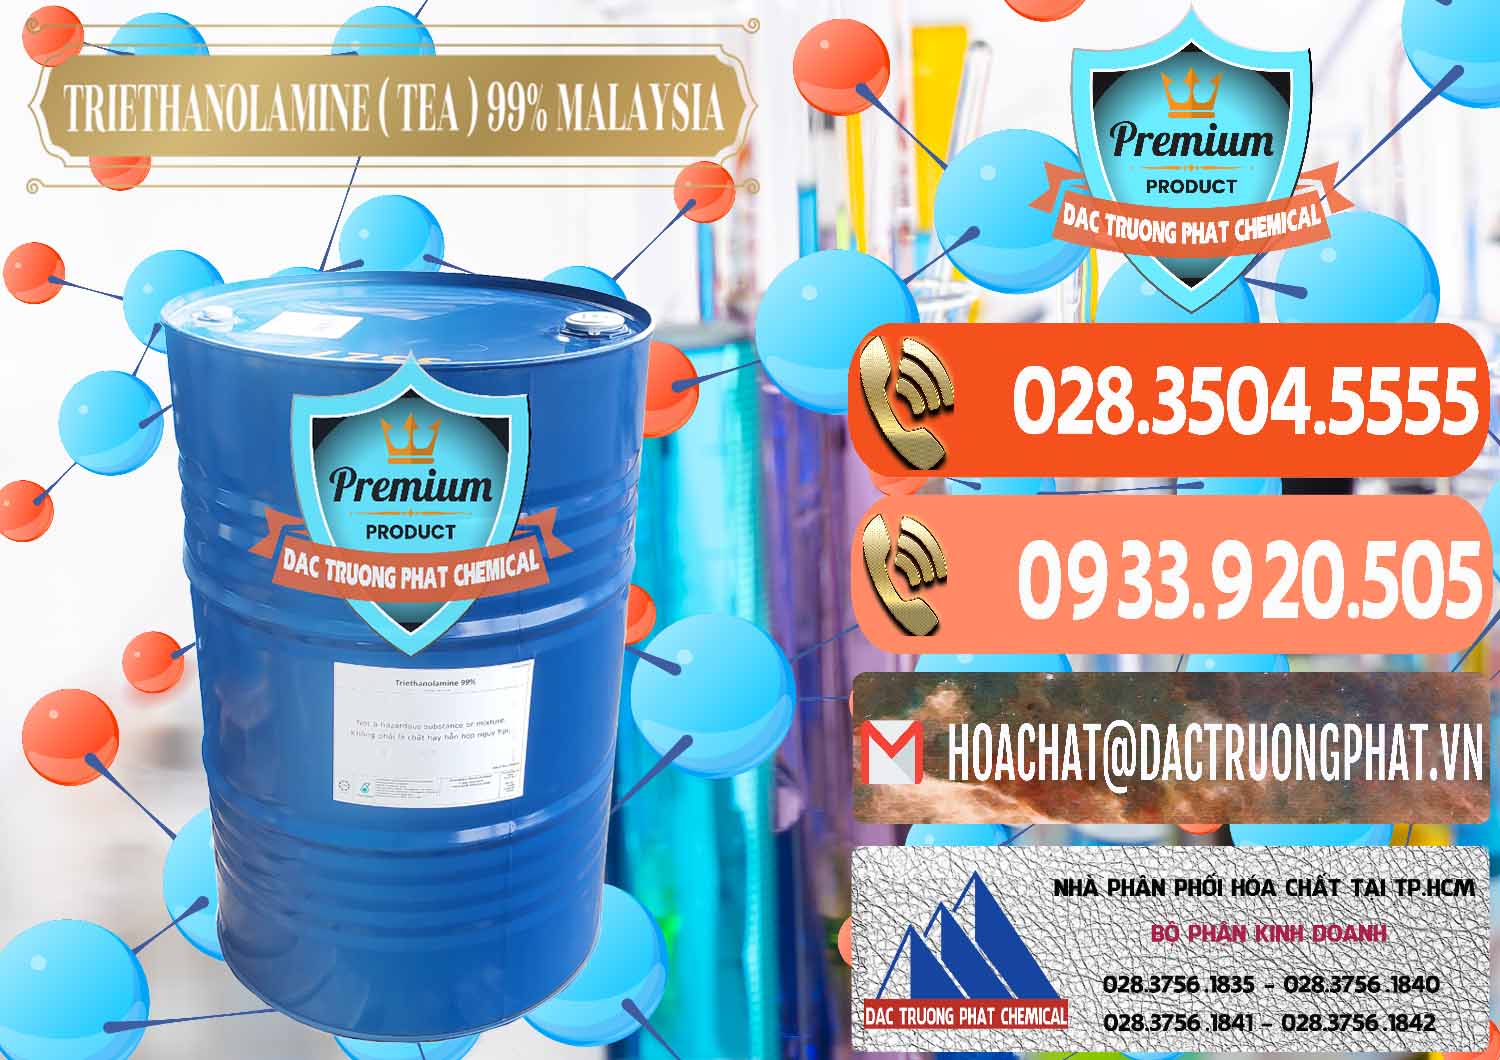 Cty chuyên phân phối - bán TEA - Triethanolamine 99% Mã Lai Malaysia - 0323 - Cty nhập khẩu - cung cấp hóa chất tại TP.HCM - hoachatmientay.com